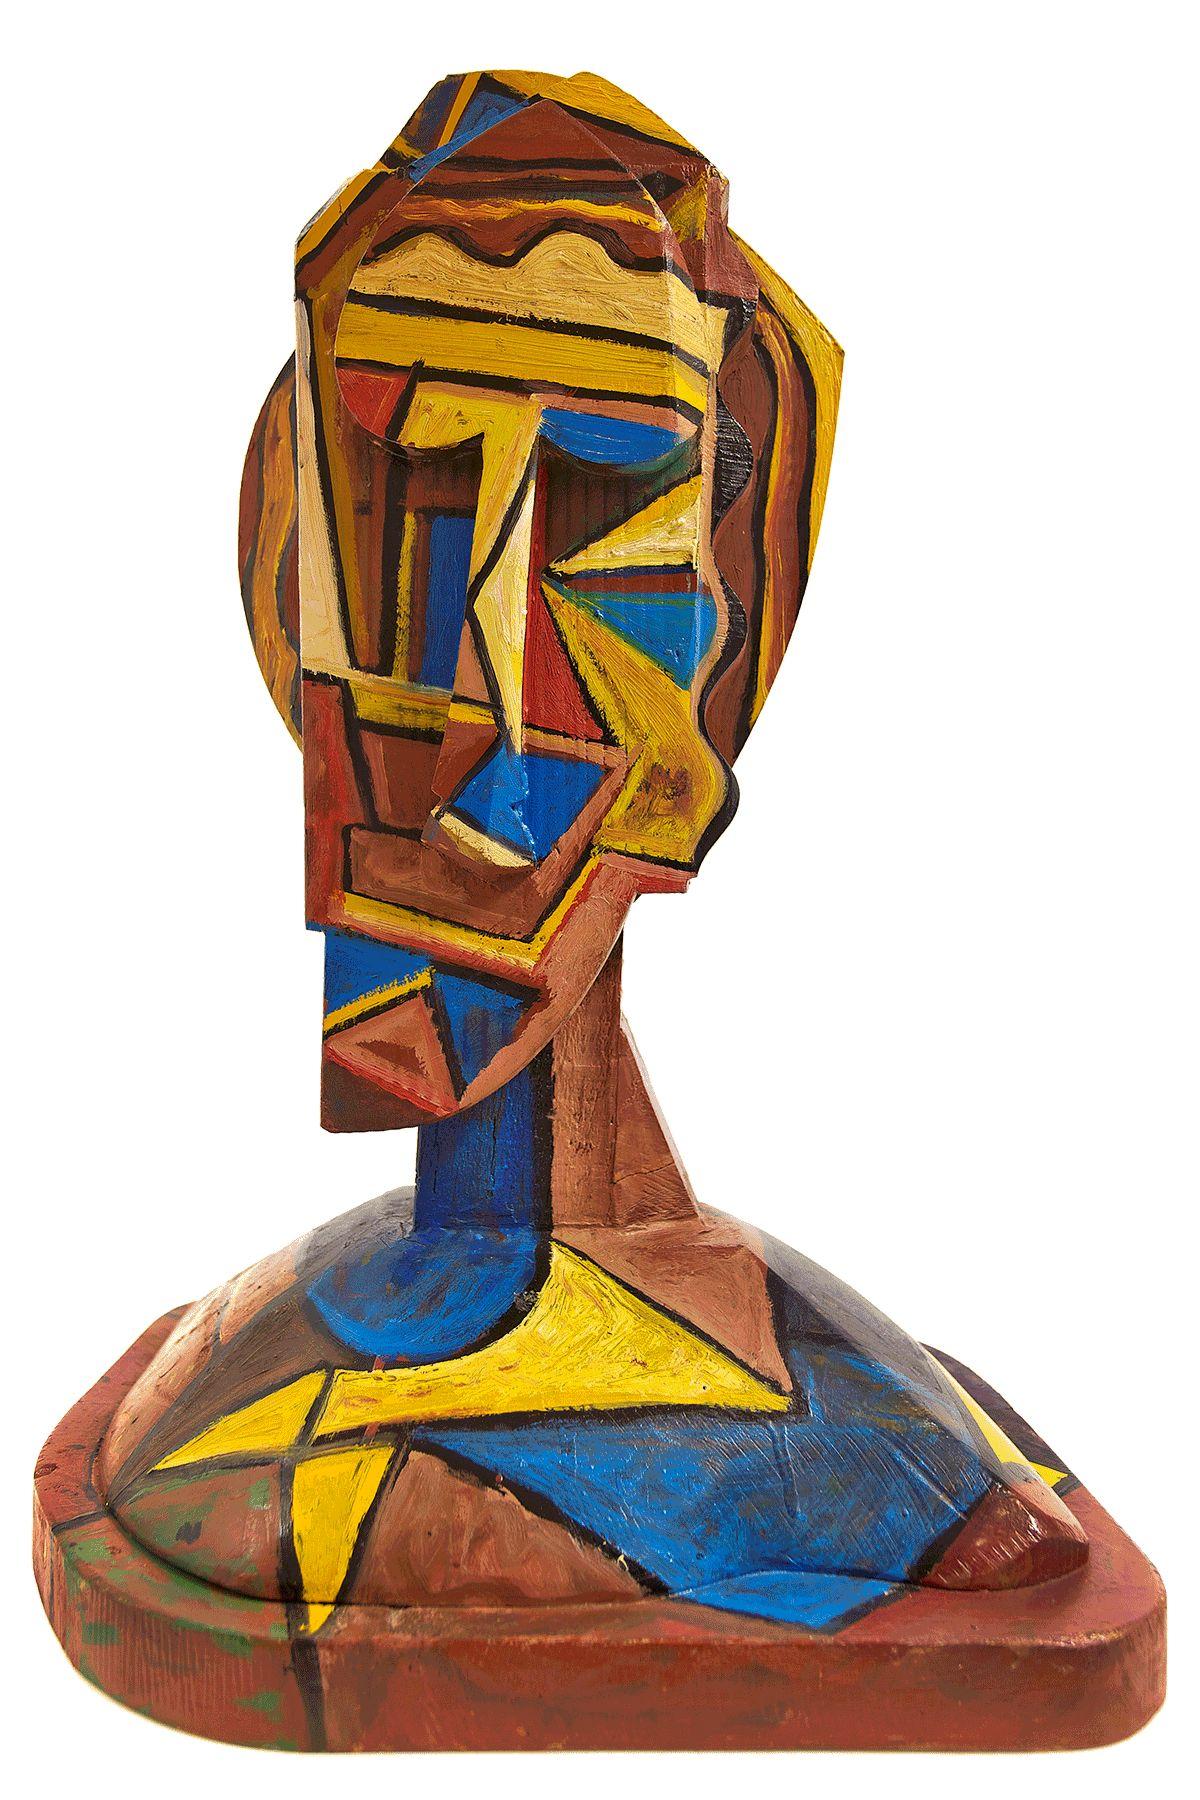 Tête de sculpture en bois peint, géométrique abstraite et cubiste, art néo- figuratif italien - Cubisme Sculpture par Italo Scanga